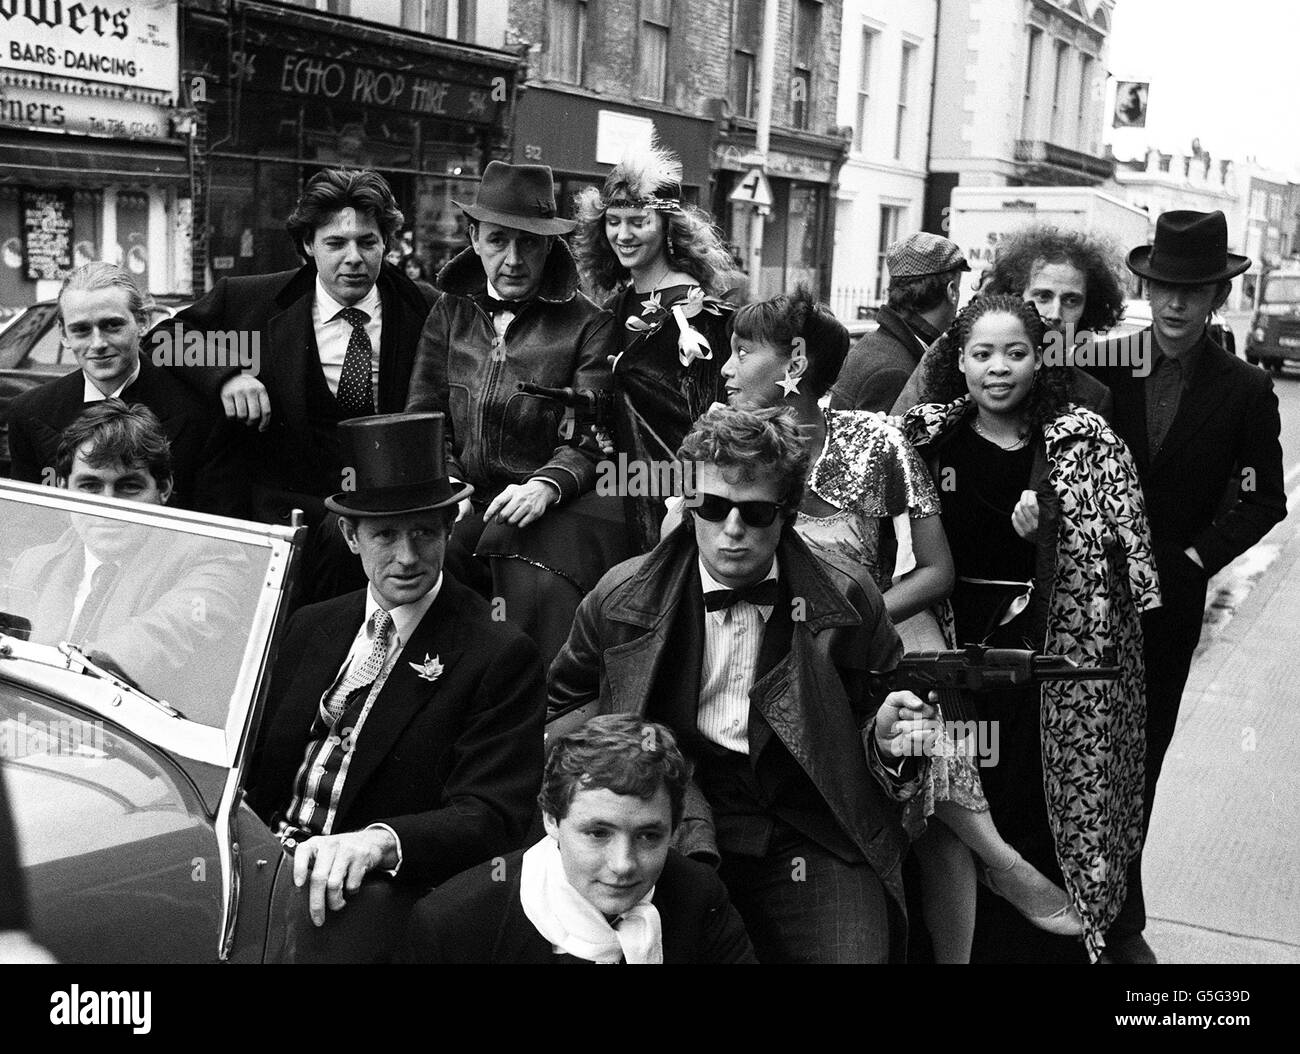 Jockey Walter Swinburn (devant) Showjumper Richard Meade (chapeau haut), avec les Muslicans (derrière) Richard Trotter (L), Bill Lovejoy et Scupptress Katie Braine assistent à une fête pop à Fulham, dans le sud de Londres. Banque D'Images